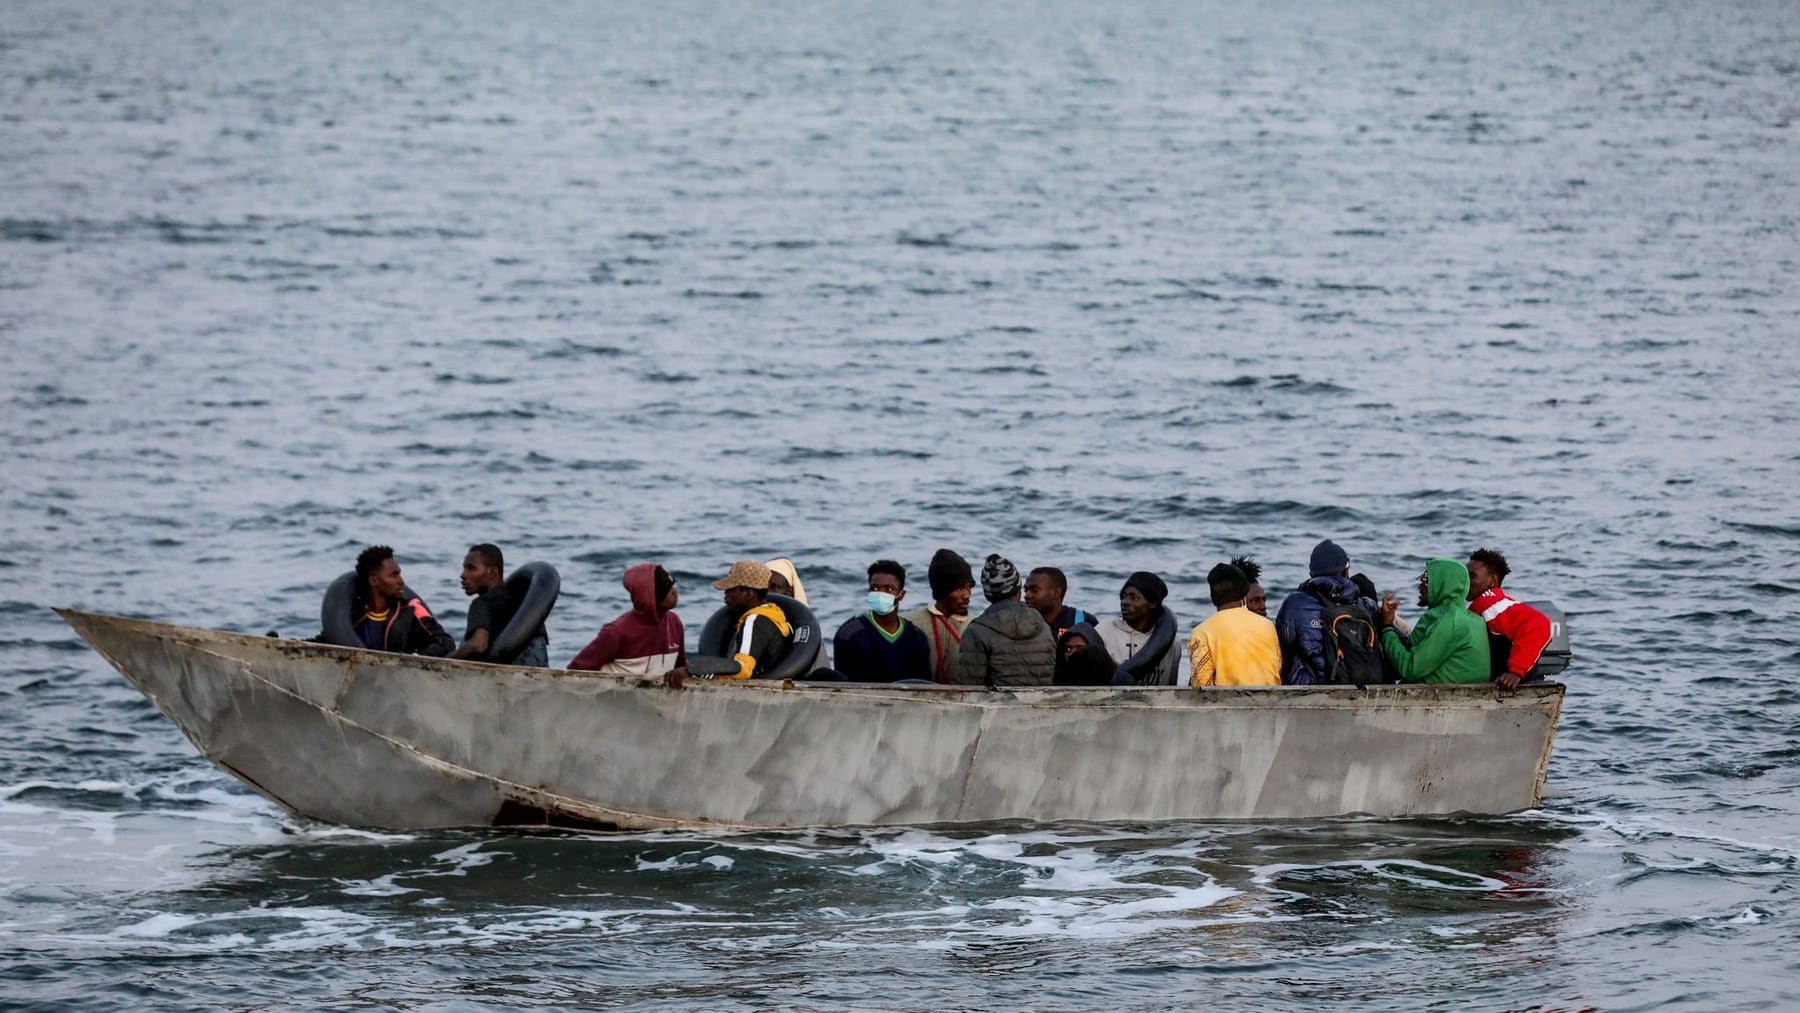 La barca che trasportava i rifugiati si è capovolta: sono morte almeno cinque persone